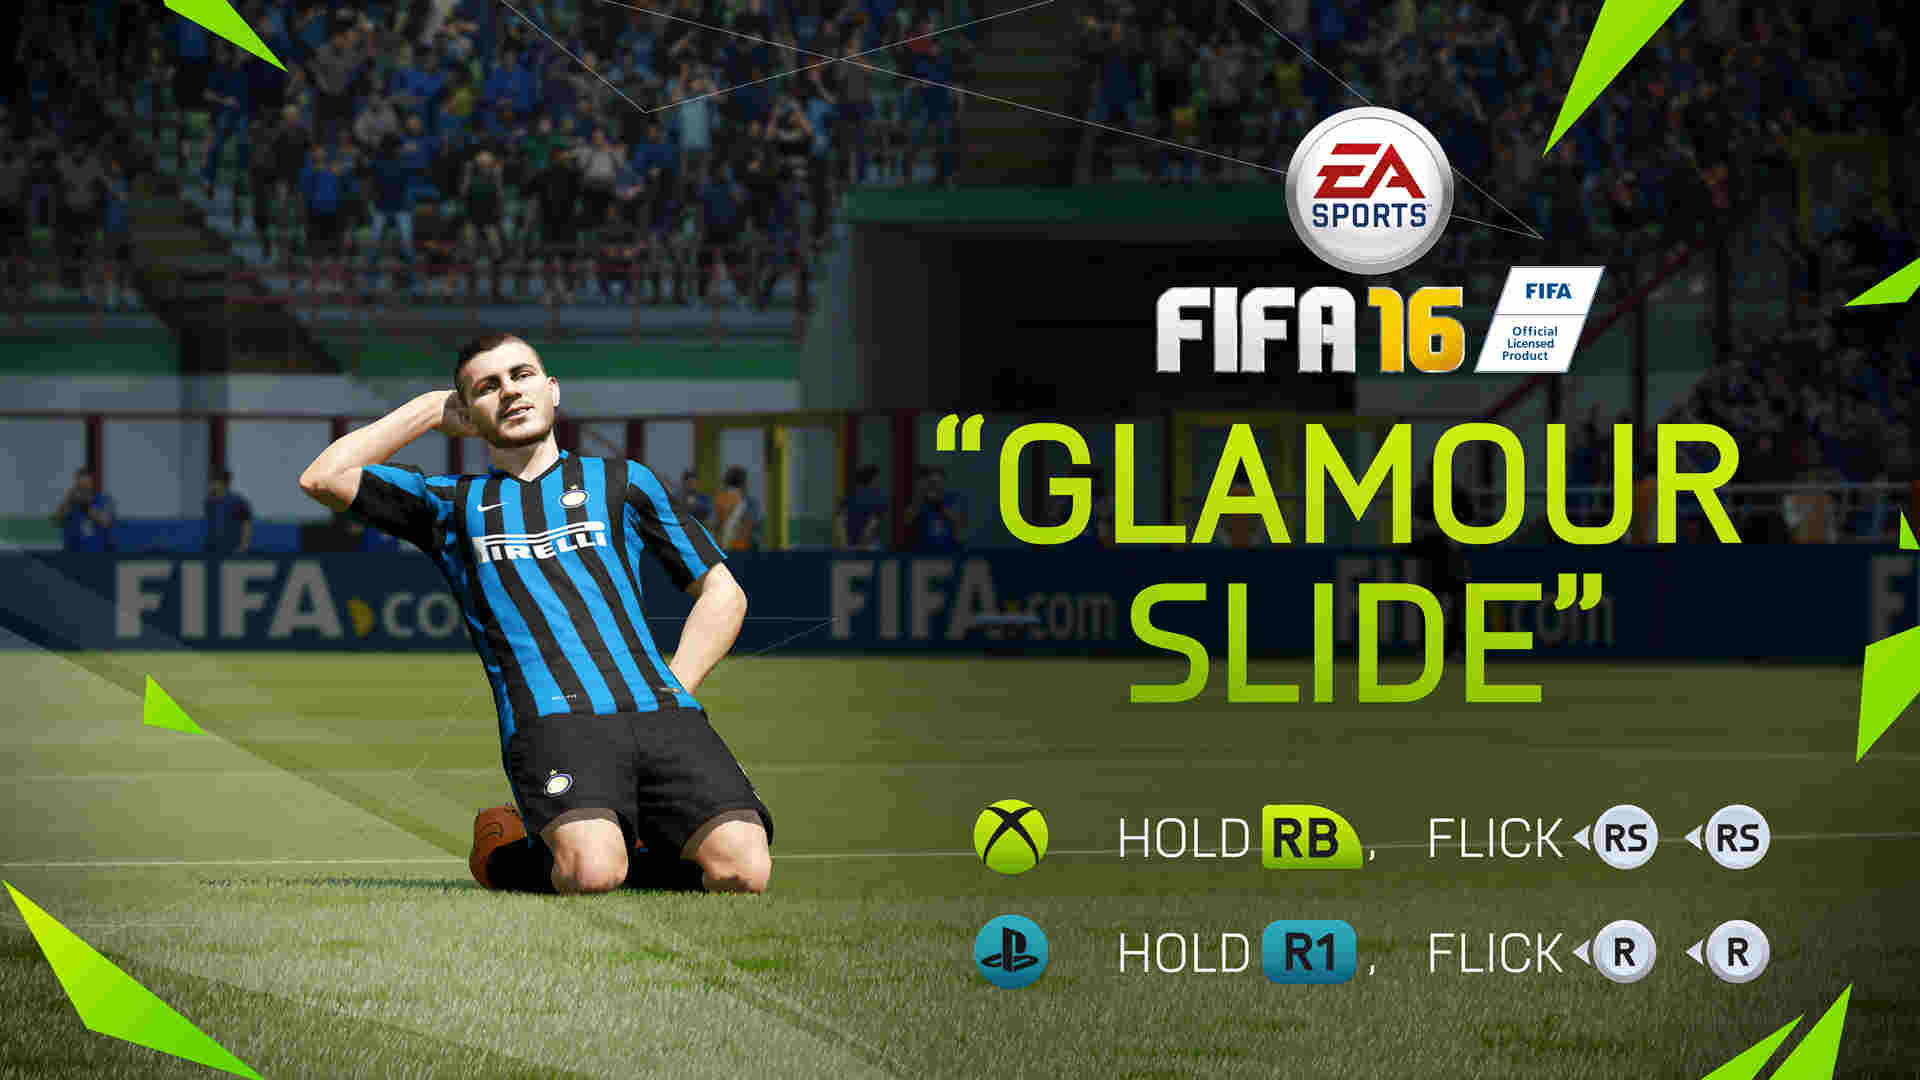 FIFA 16 Glamour Slide.jpg